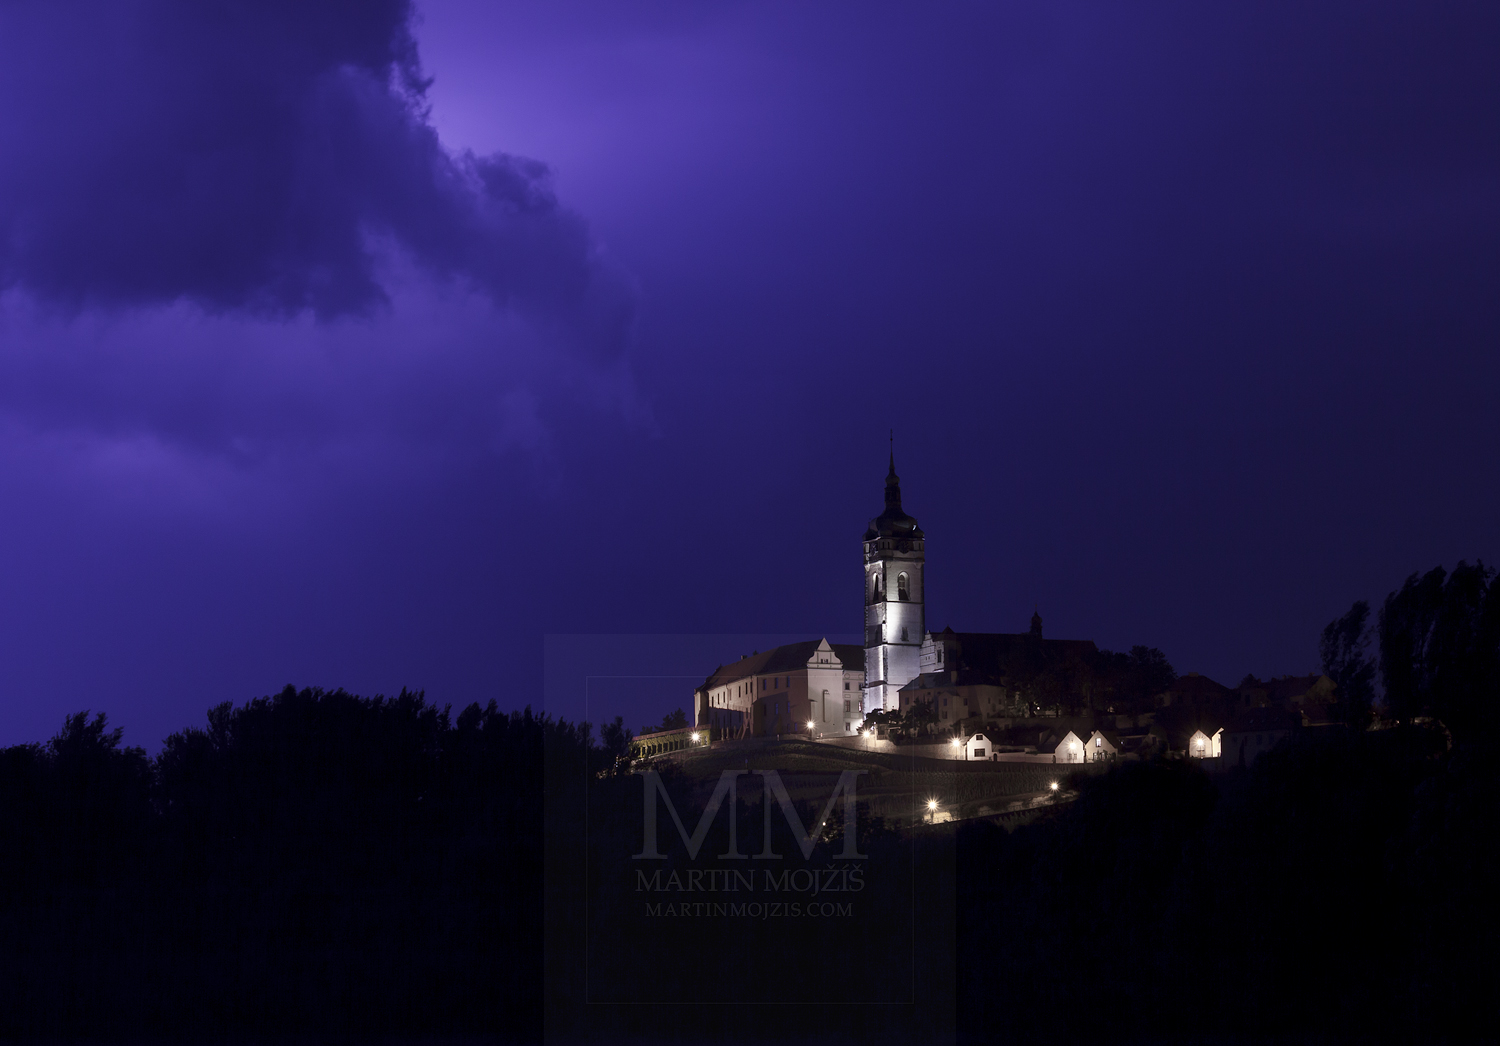 Zámek Mělník a kostel při bouřce. Fotografie: © Martin Mojžíš. PROFESIONÁLNÍ FOTOGRAFOVÁNÍ EXTERIERŮ.